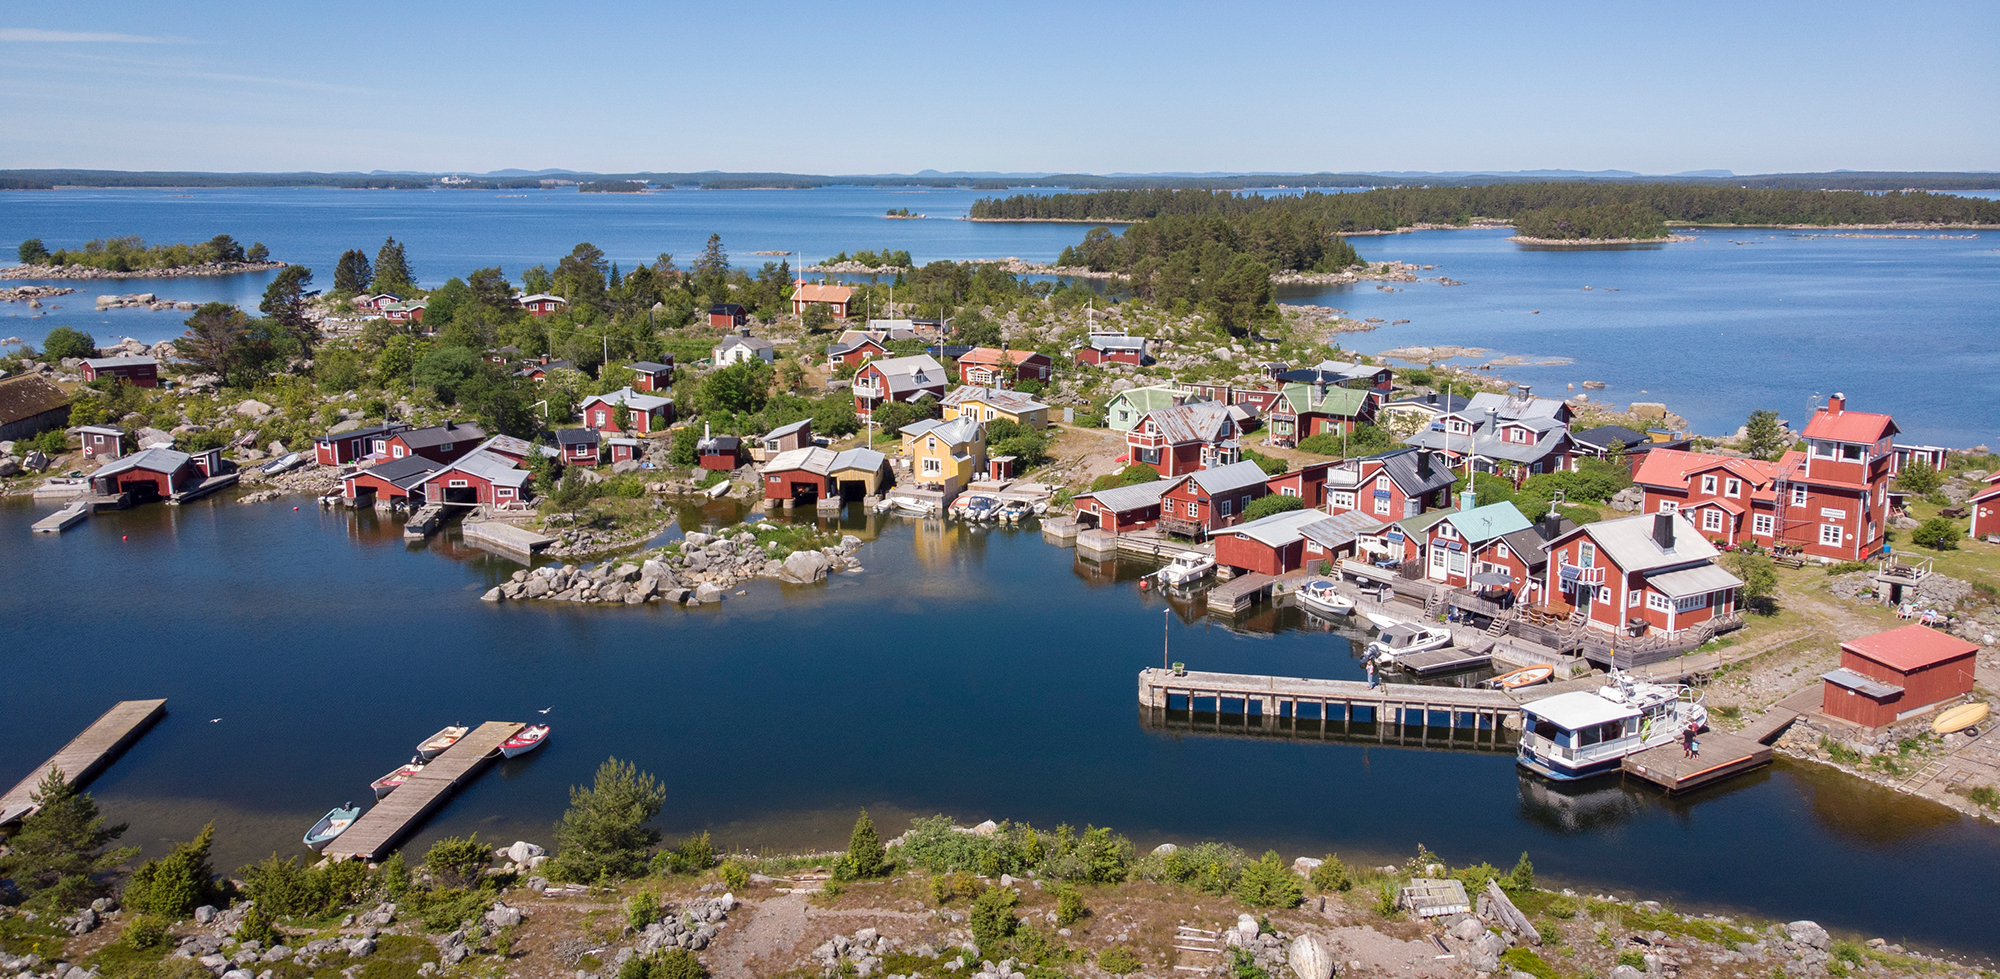 Den pittoreska ön Rönnskär - ön med mycket lotsarhistoria.